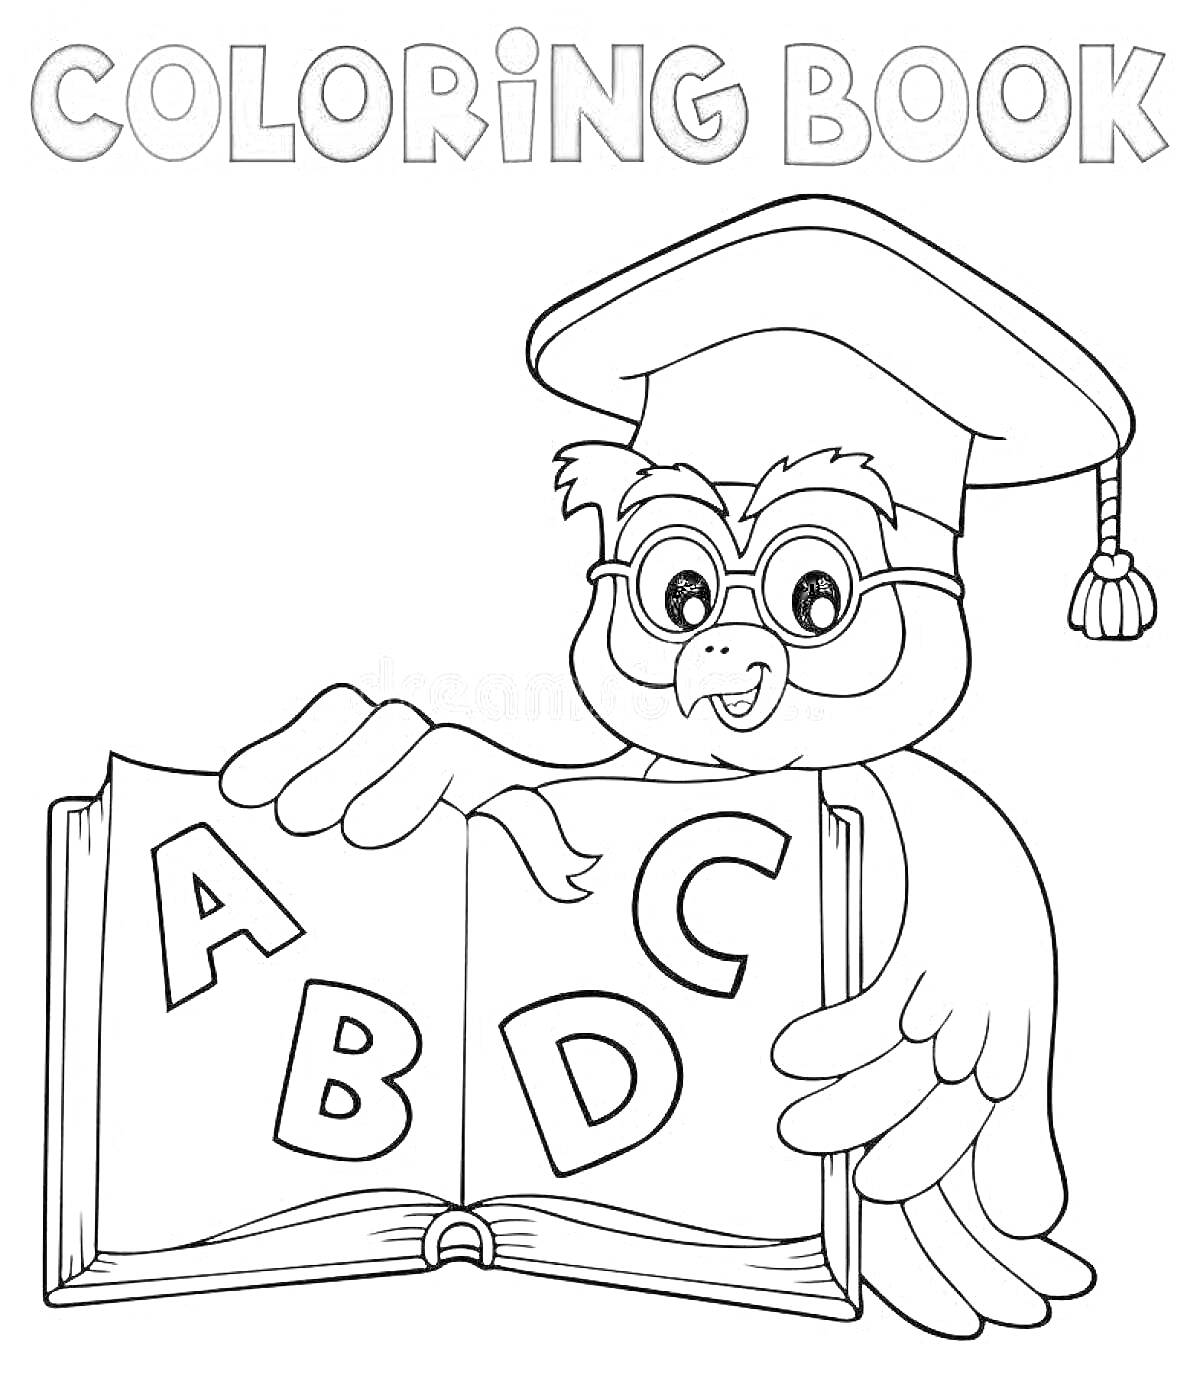 Умная сова держит книгу с буквами A, B, C и D, в очках и академической шапочке